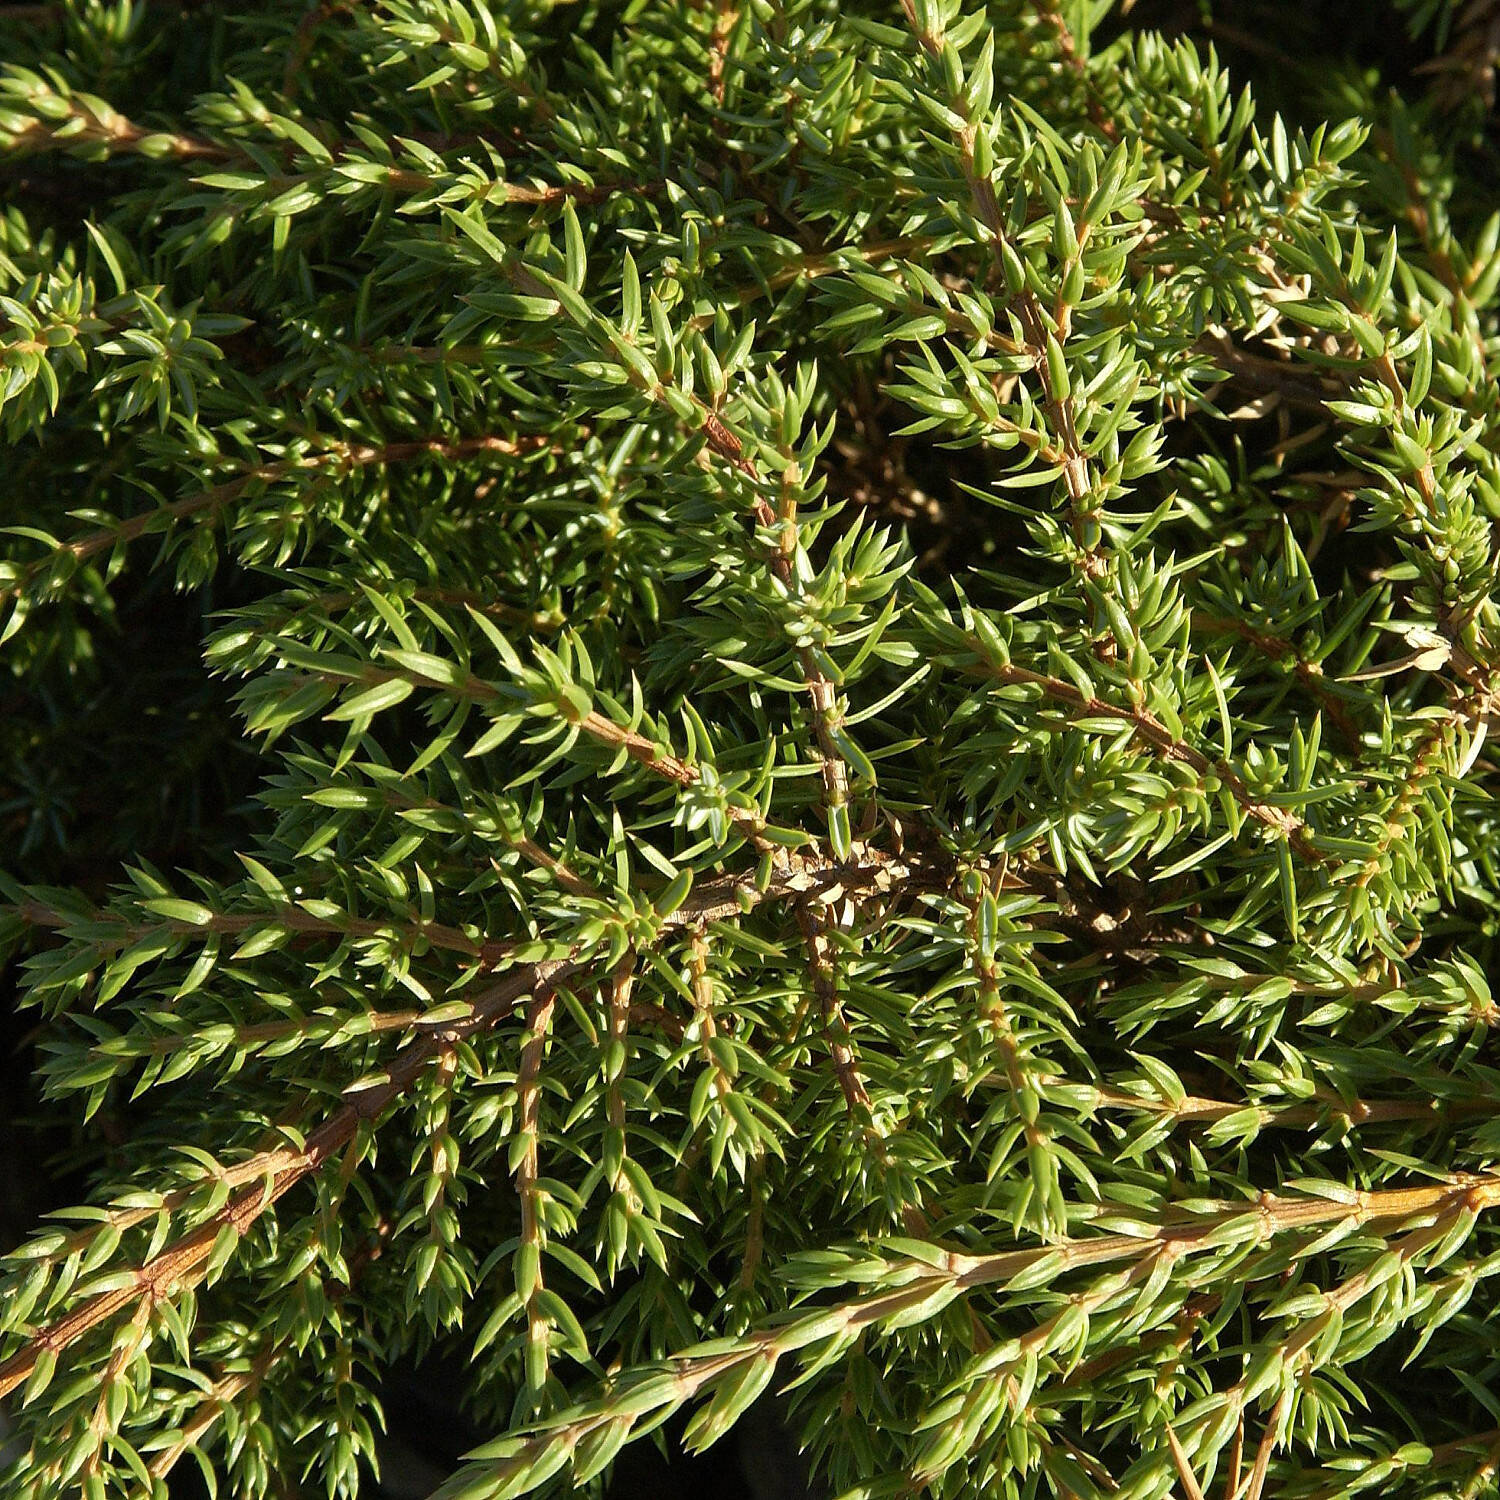 Kategorie <b>Nadelbäume u. Koniferen </b> - Kriechwacholder 'Green Carpet' - Juniperus communis 'Green Carpet'